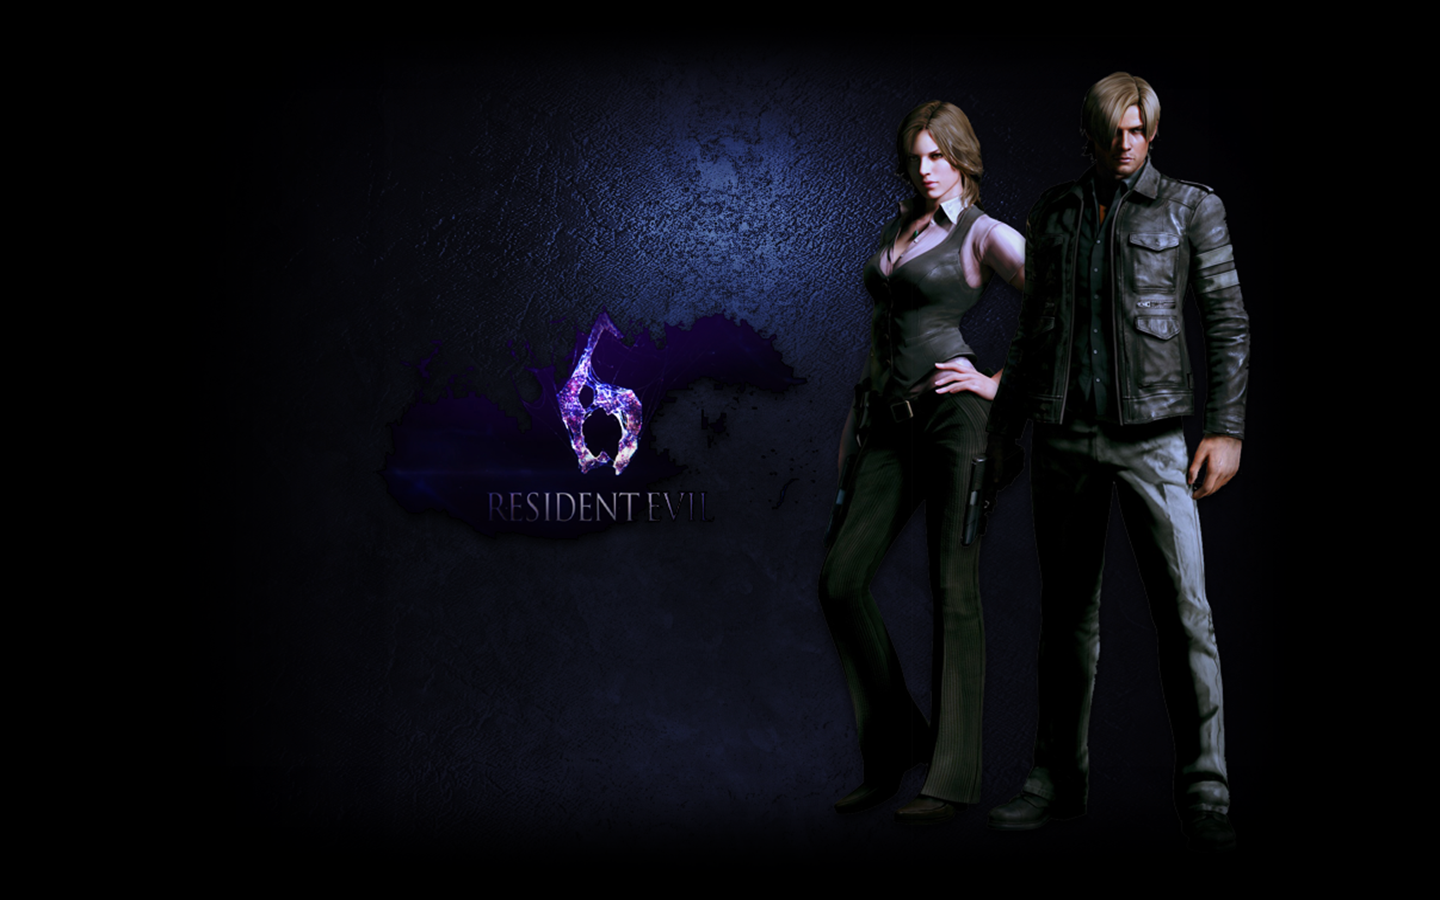 Resident Evil Wallpaper HD Game